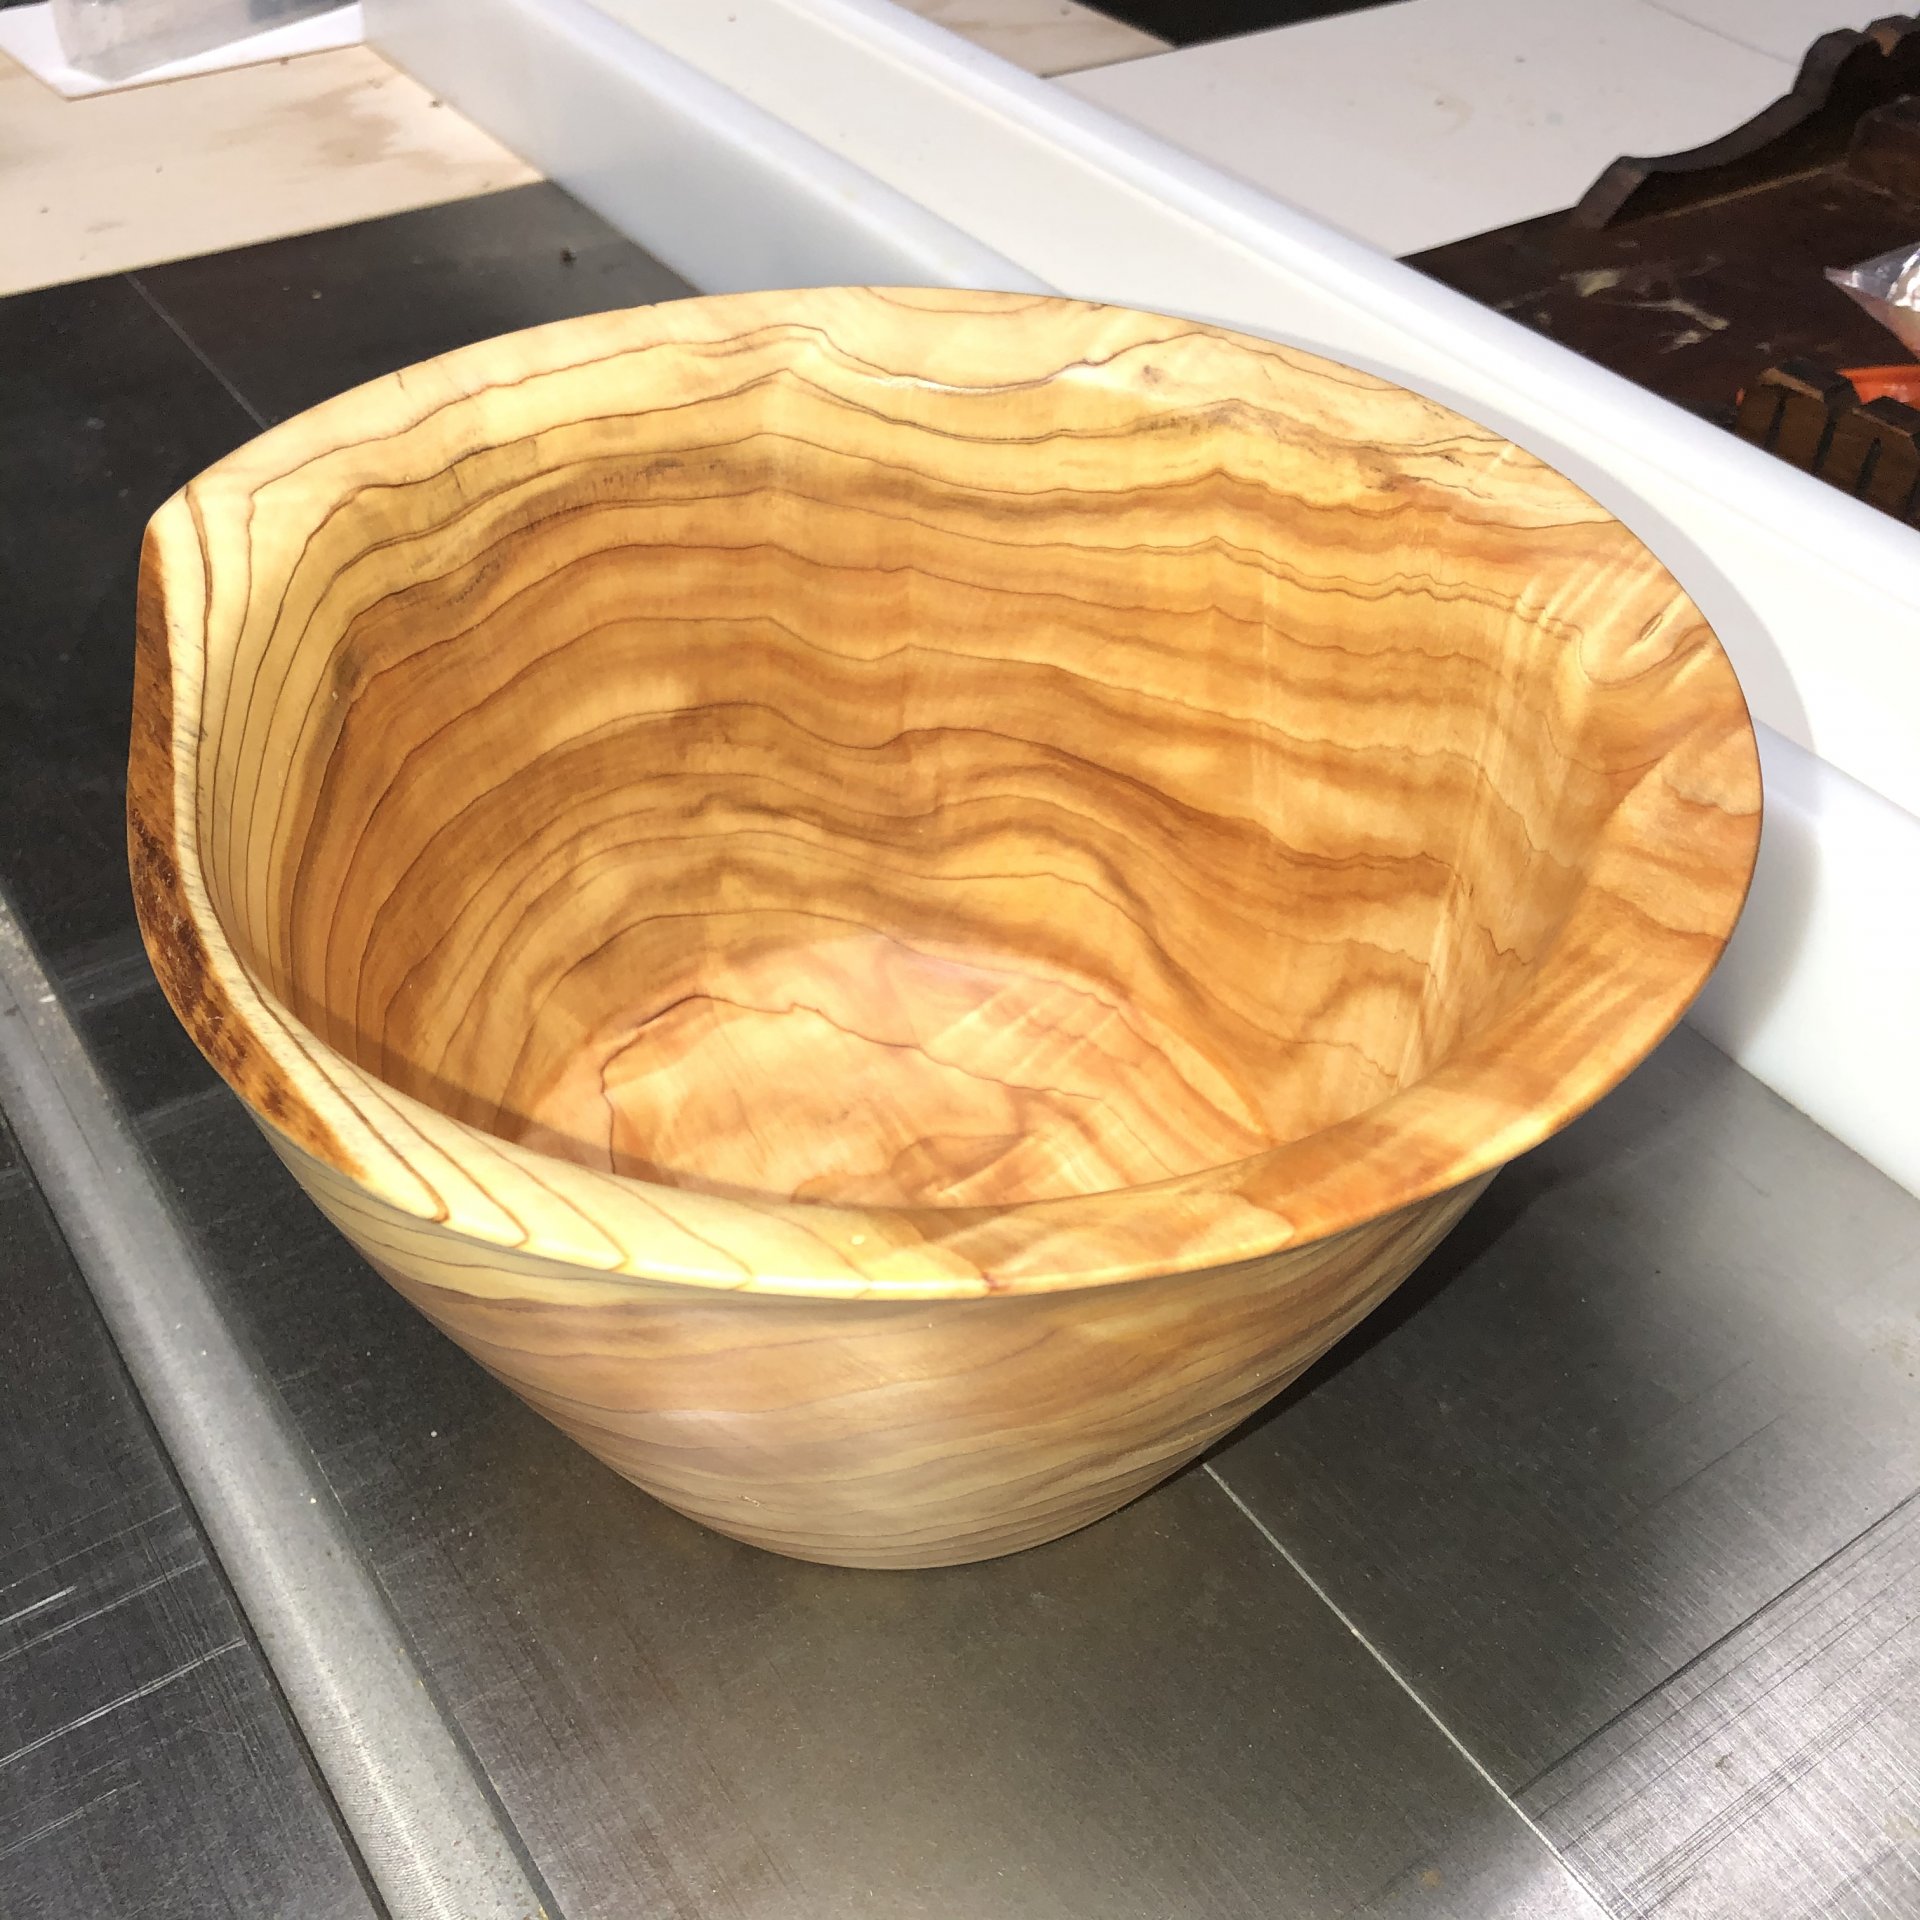 Figured cedar bowl thing